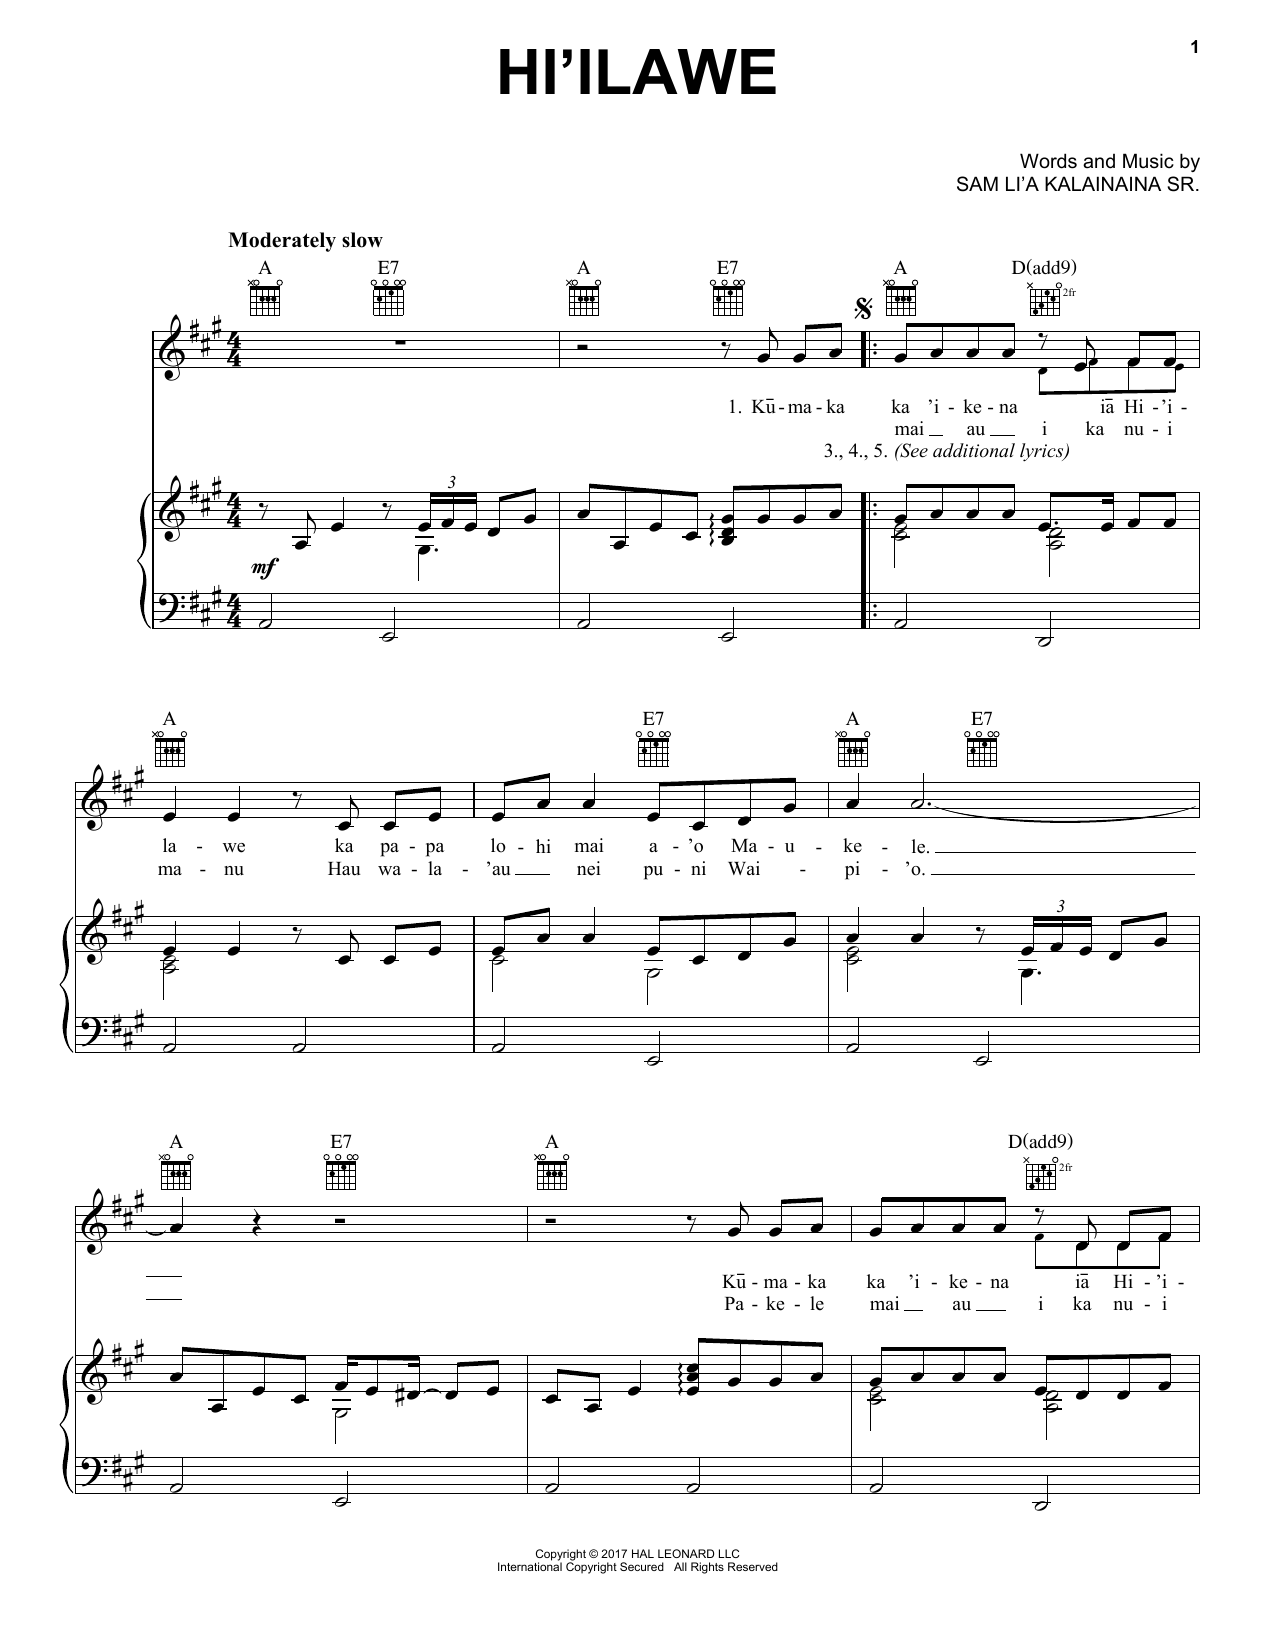 Sam Li'a Kalainaina Sr. Hi'ilawe Sheet Music Notes & Chords for Piano, Vocal & Guitar (Right-Hand Melody) - Download or Print PDF